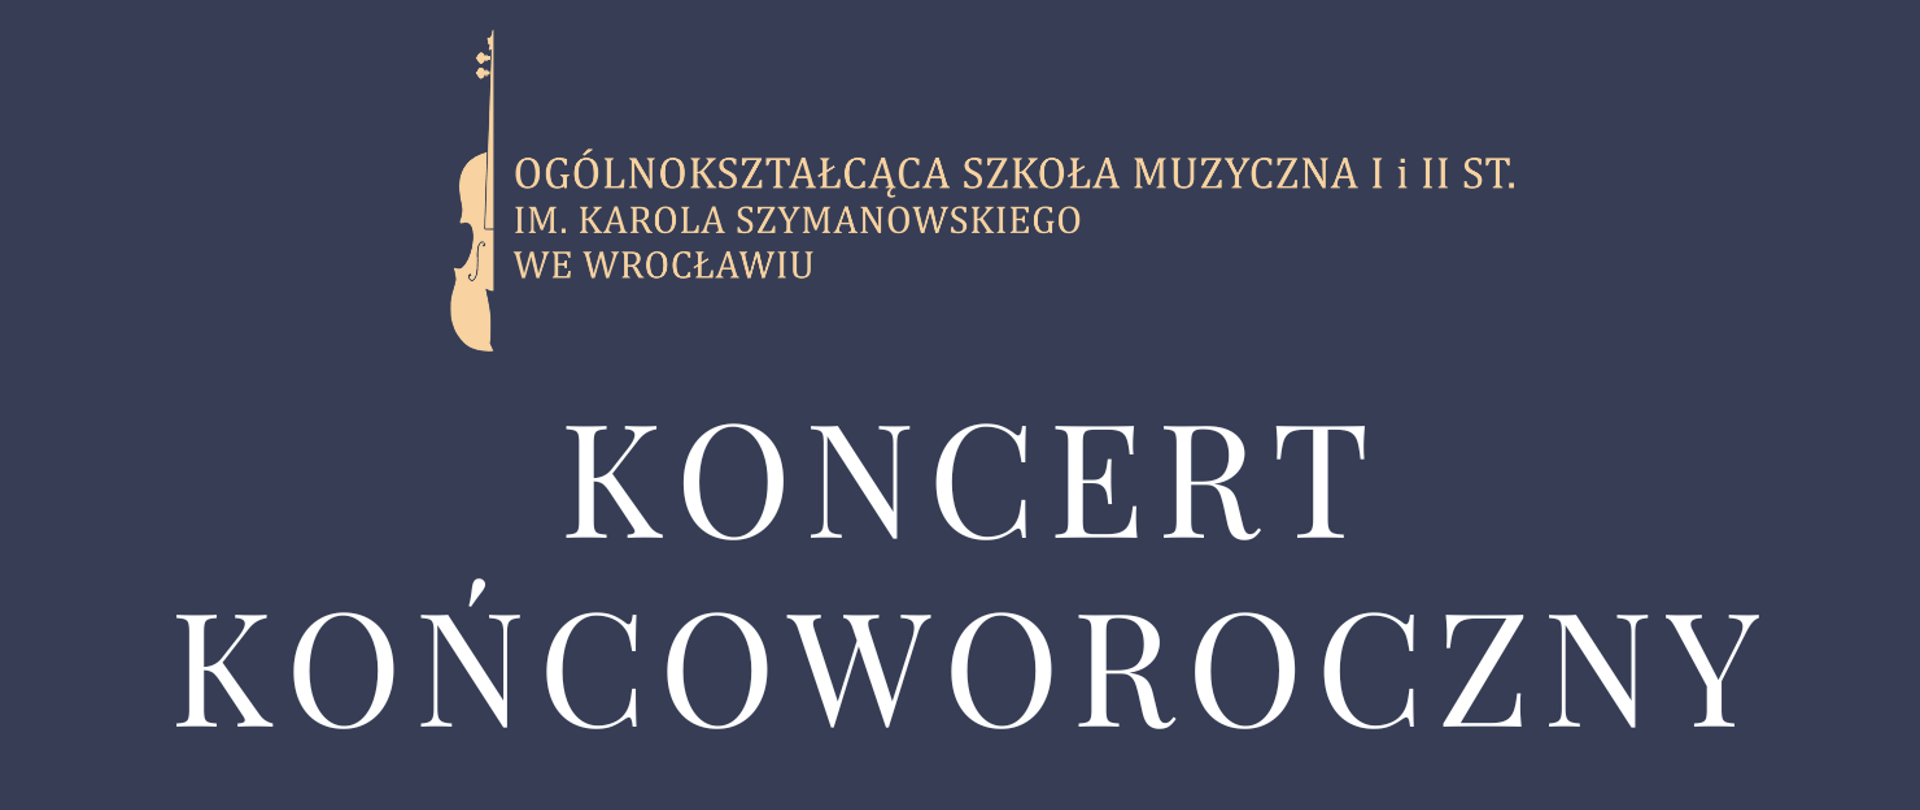 kolorowy plakat zawierający element graficzny skrzypce oraz logo szkoły i tytuł koncertu " Koncert końcoworoczny"